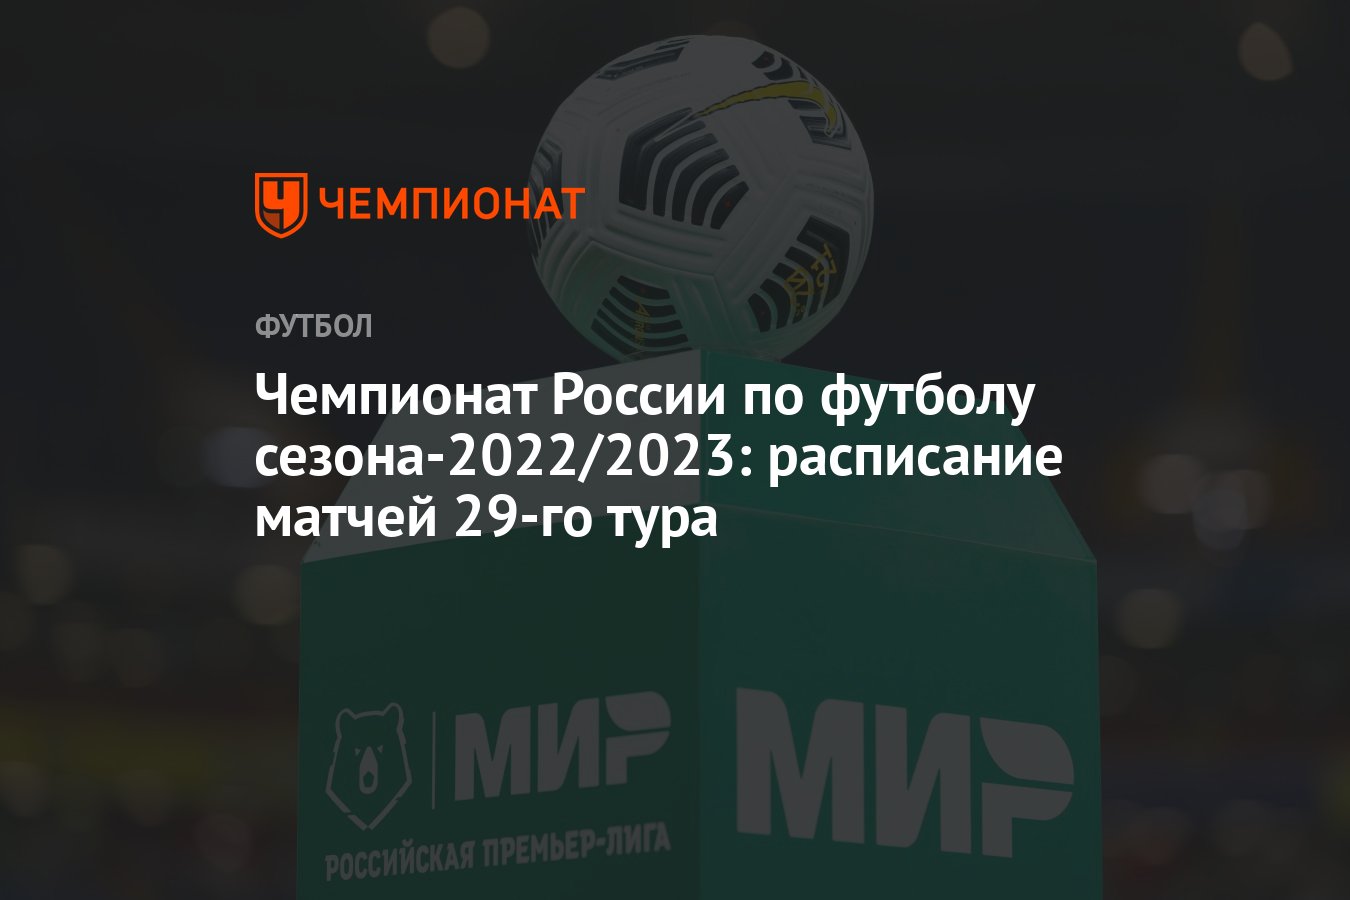 Чемпионат России по футболу сезона-2022/2023: расписание матчей 29-го тура  - Чемпионат